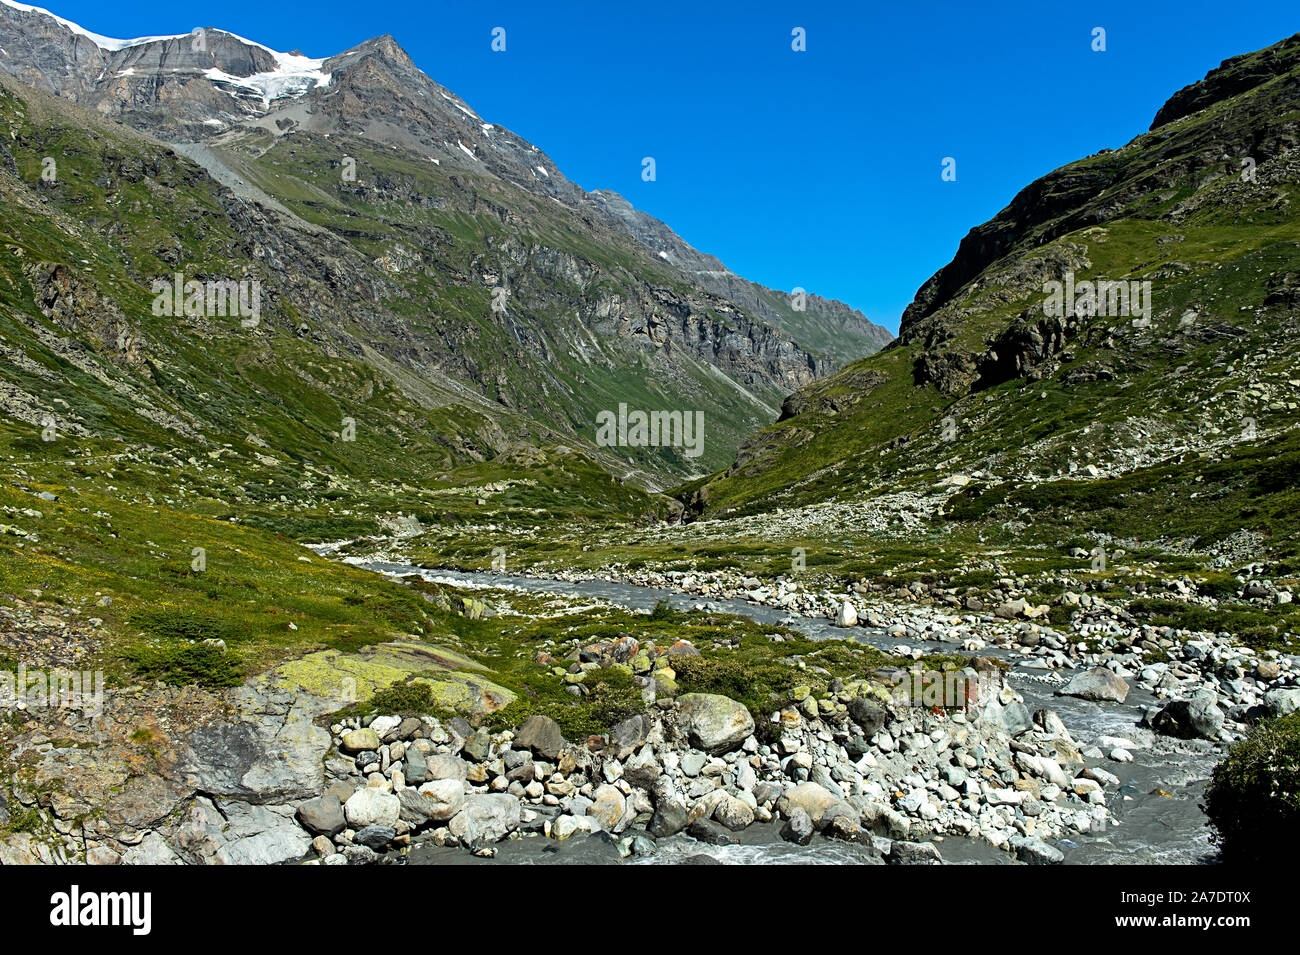 Valley of the river Drance de Bagnes in alpine landscape, Val de Bagnes, Valais, Switzerland Stock Photo